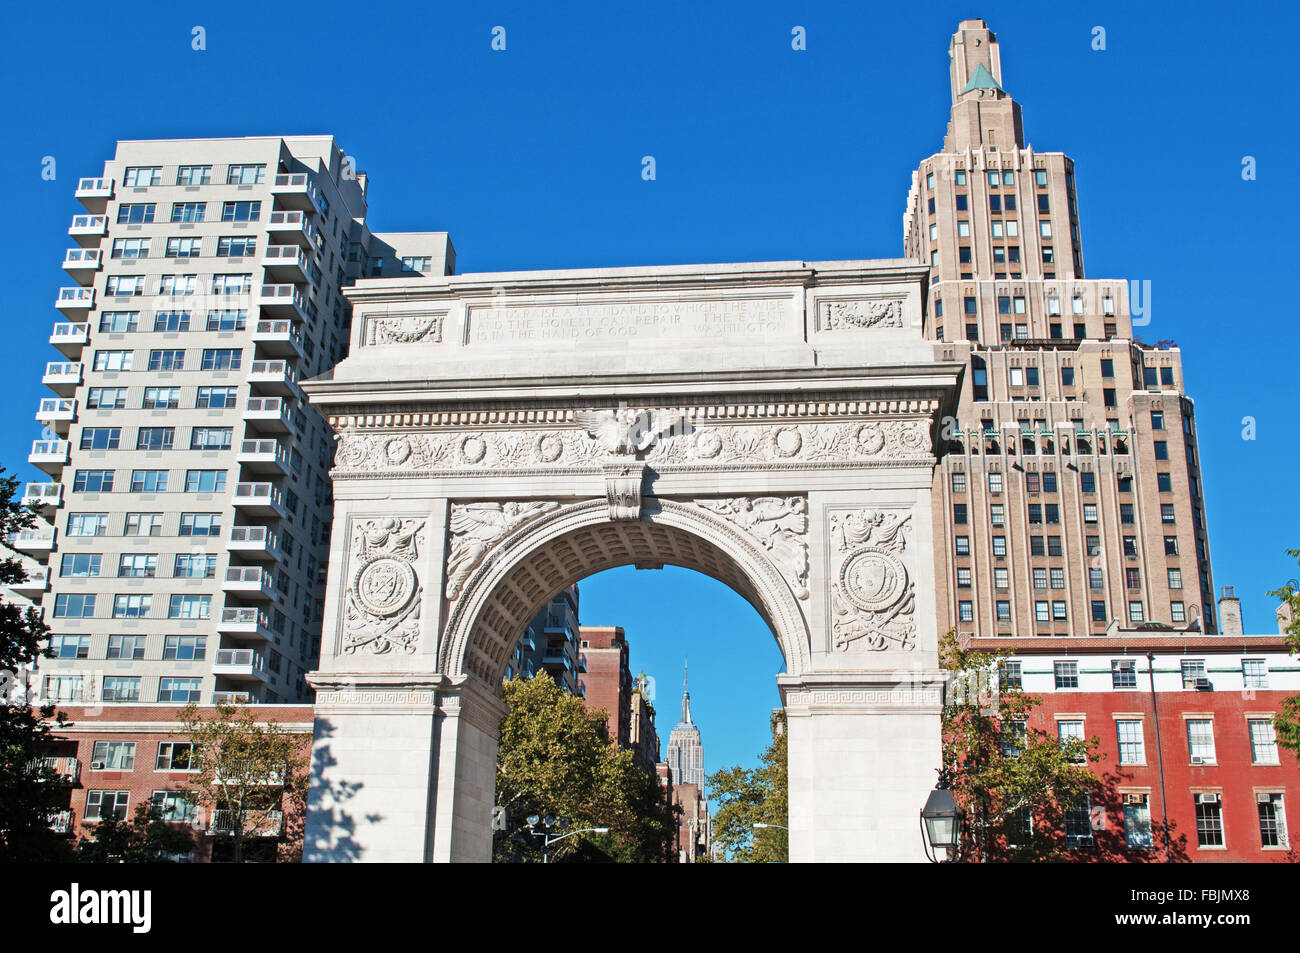 New York, États-Unis d'Amérique : Skyline, des gratte-ciel et Washington Square Arch vu de Washington Square Park Banque D'Images